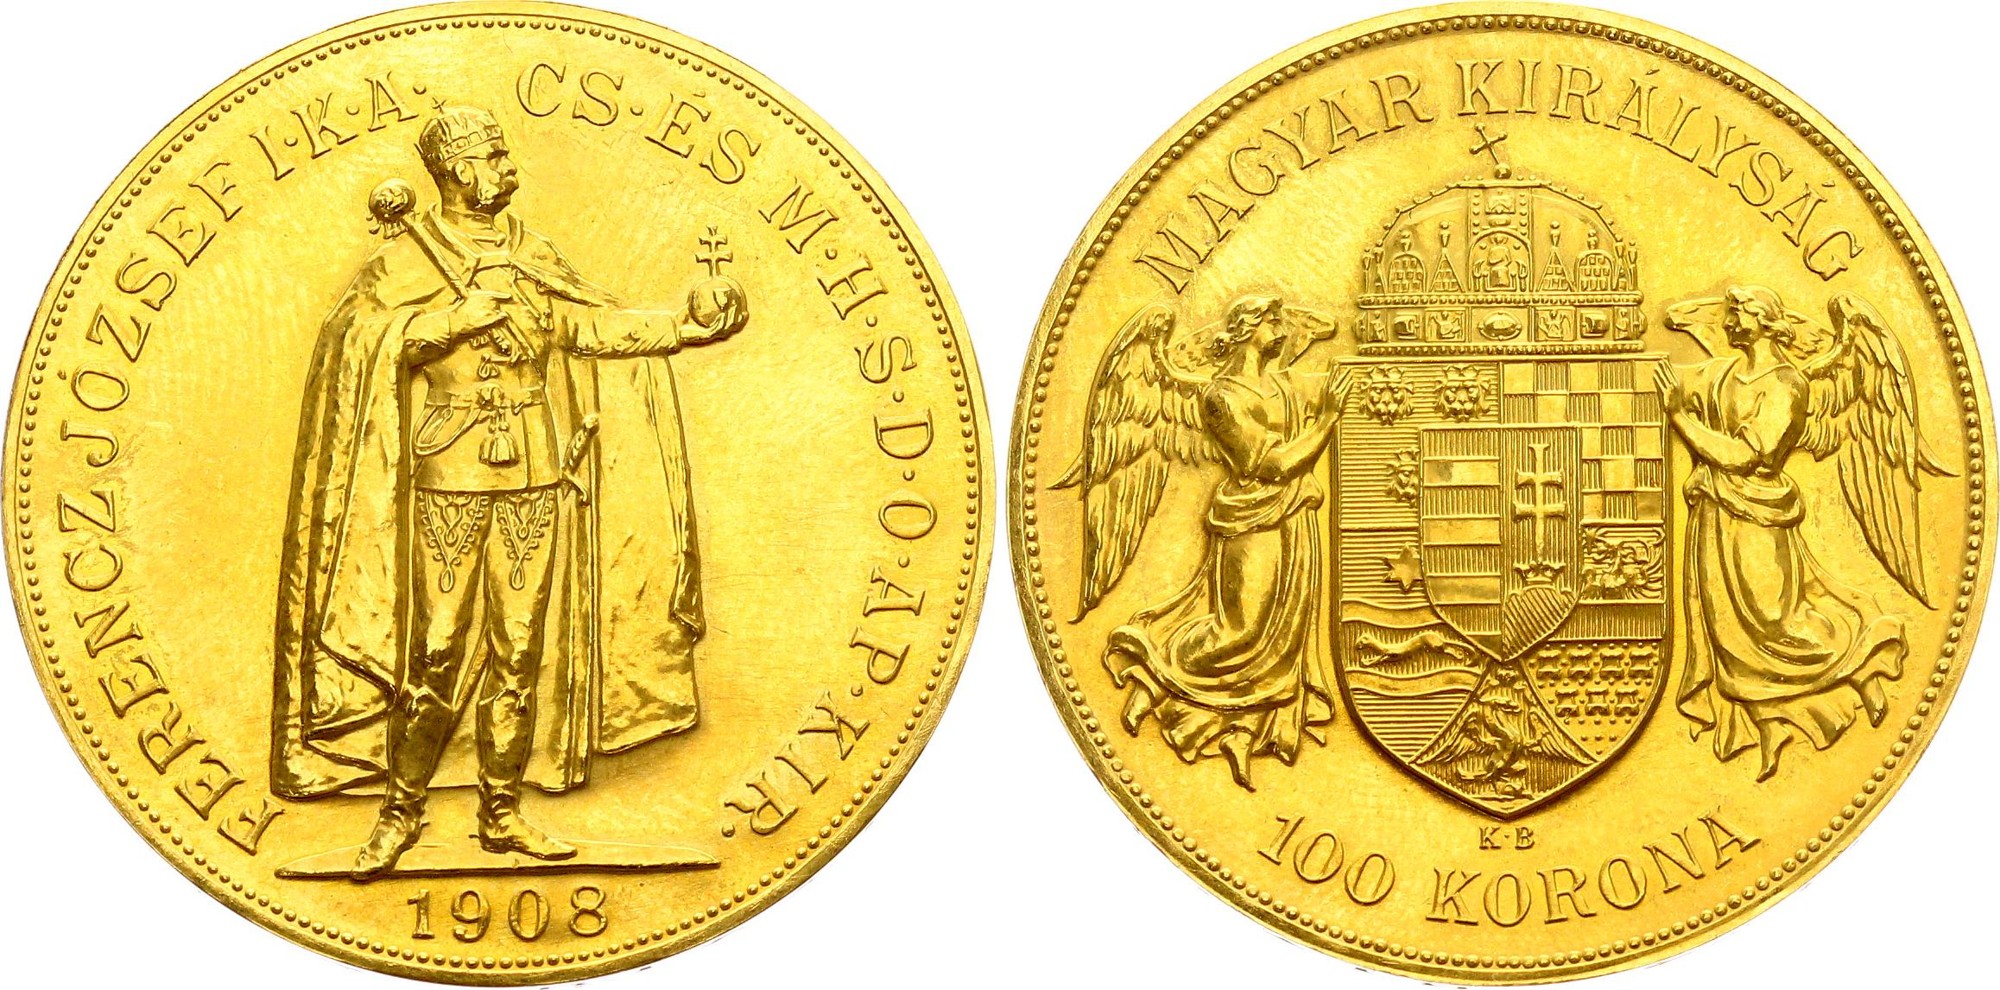 Hungary 100 Korona 1908